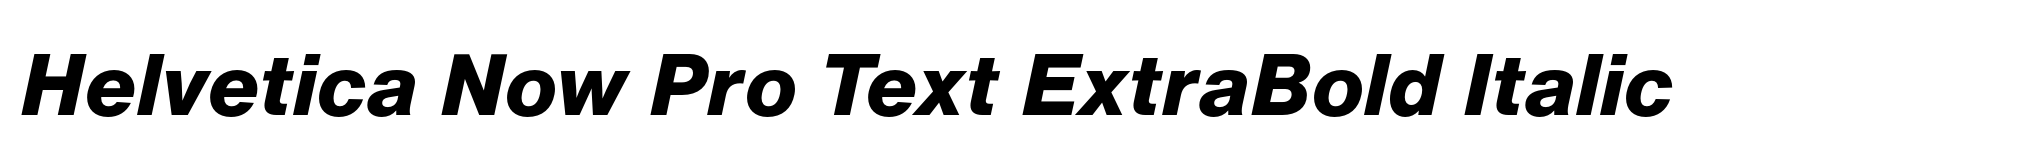 Helvetica Now Pro Text ExtraBold Italic image